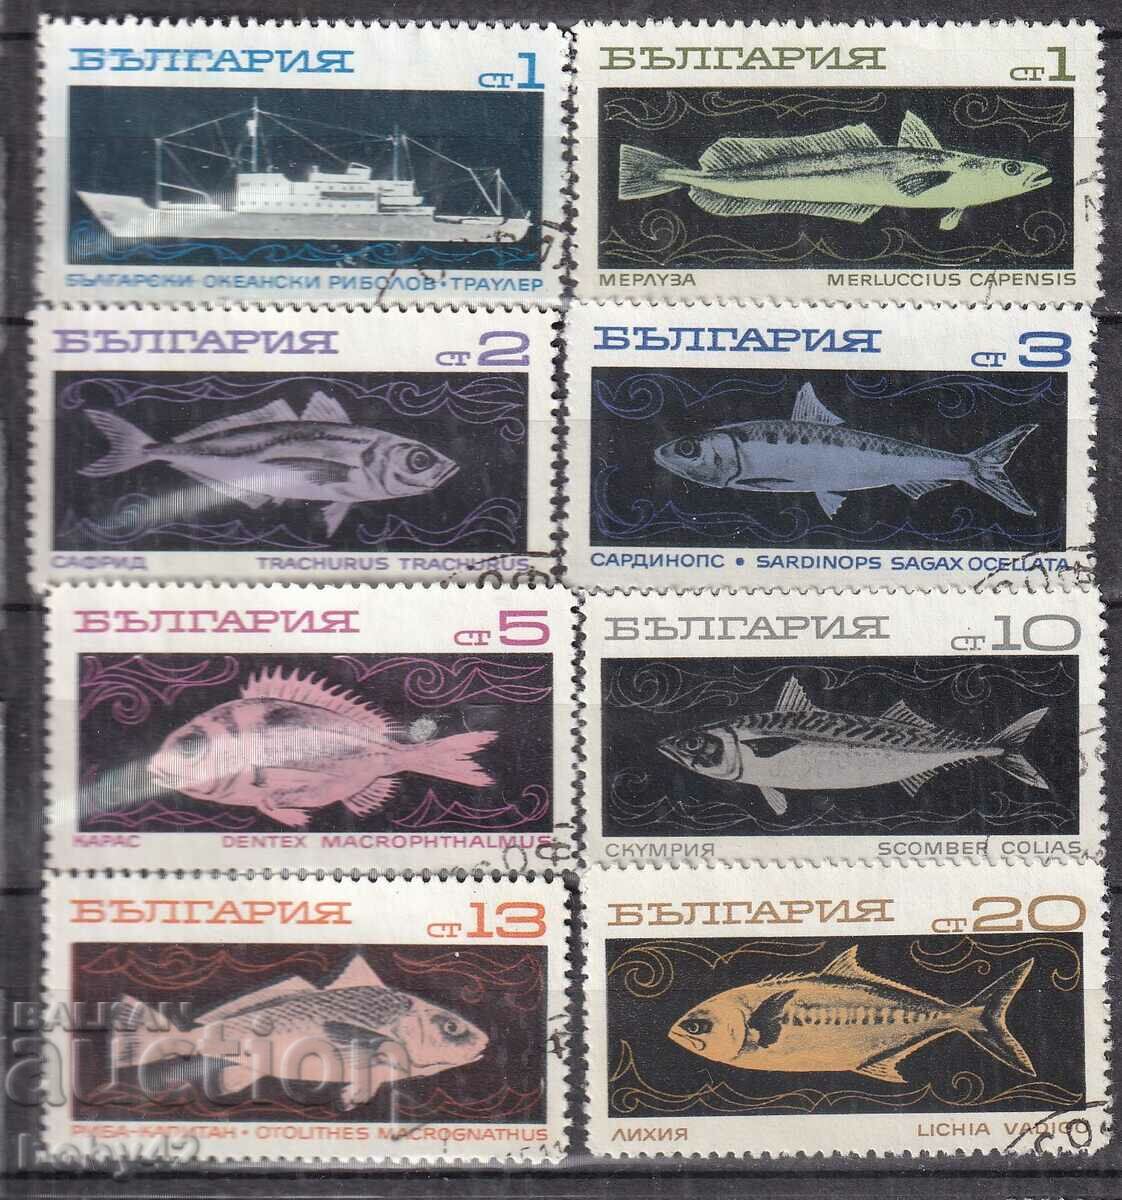 BC 2020-2057 Ocean fishing machine stamp